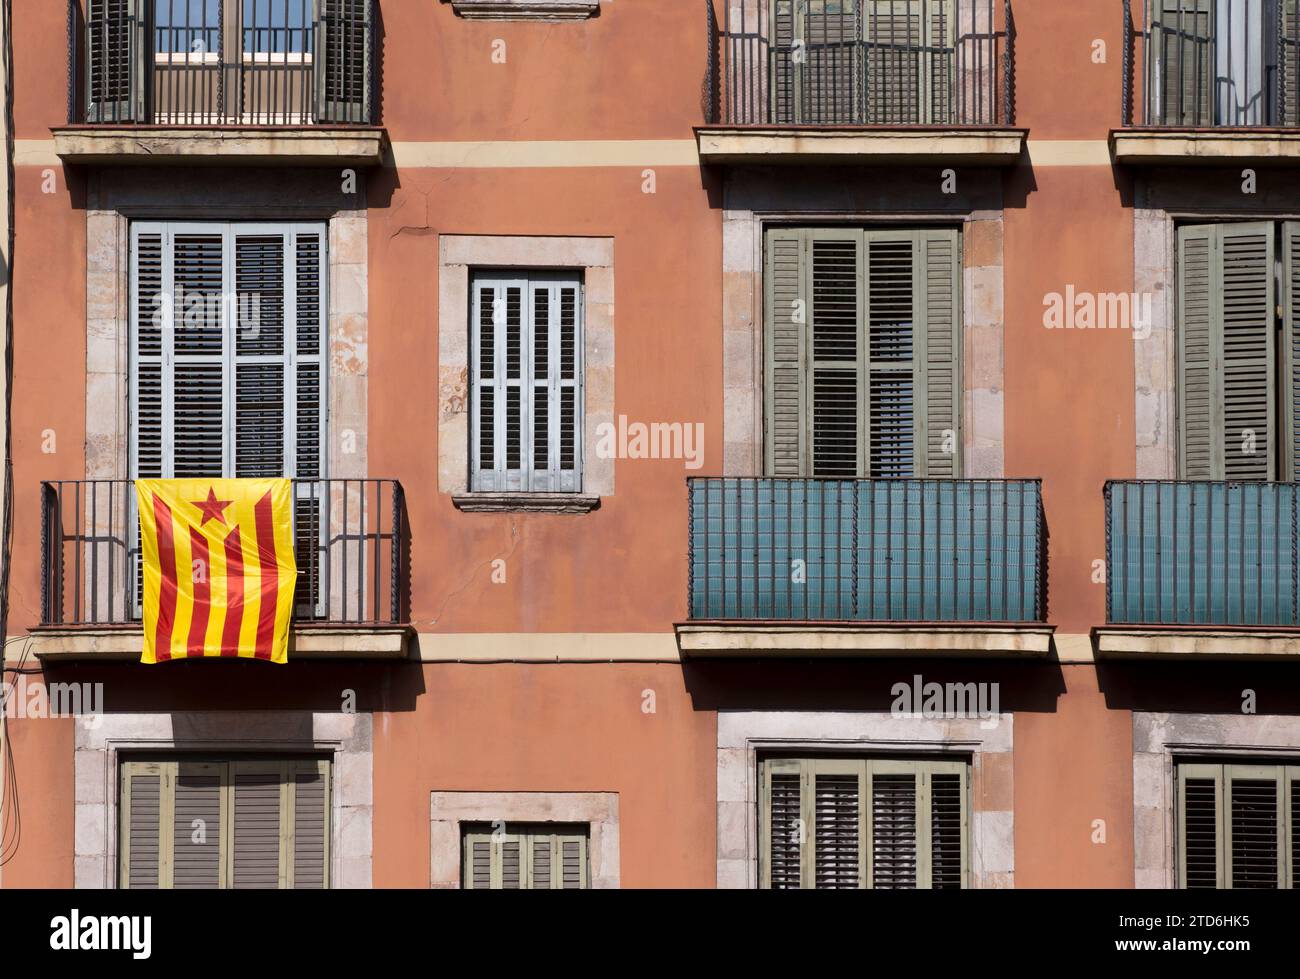 Barcelone, 09/28/2015. Drapeau de l'indépendance catalane suspendu à un bâtiment. Photo : Ignacio Gil ARCHDC. Crédit : Album / Archivo ABC / Ignacio Gil Banque D'Images